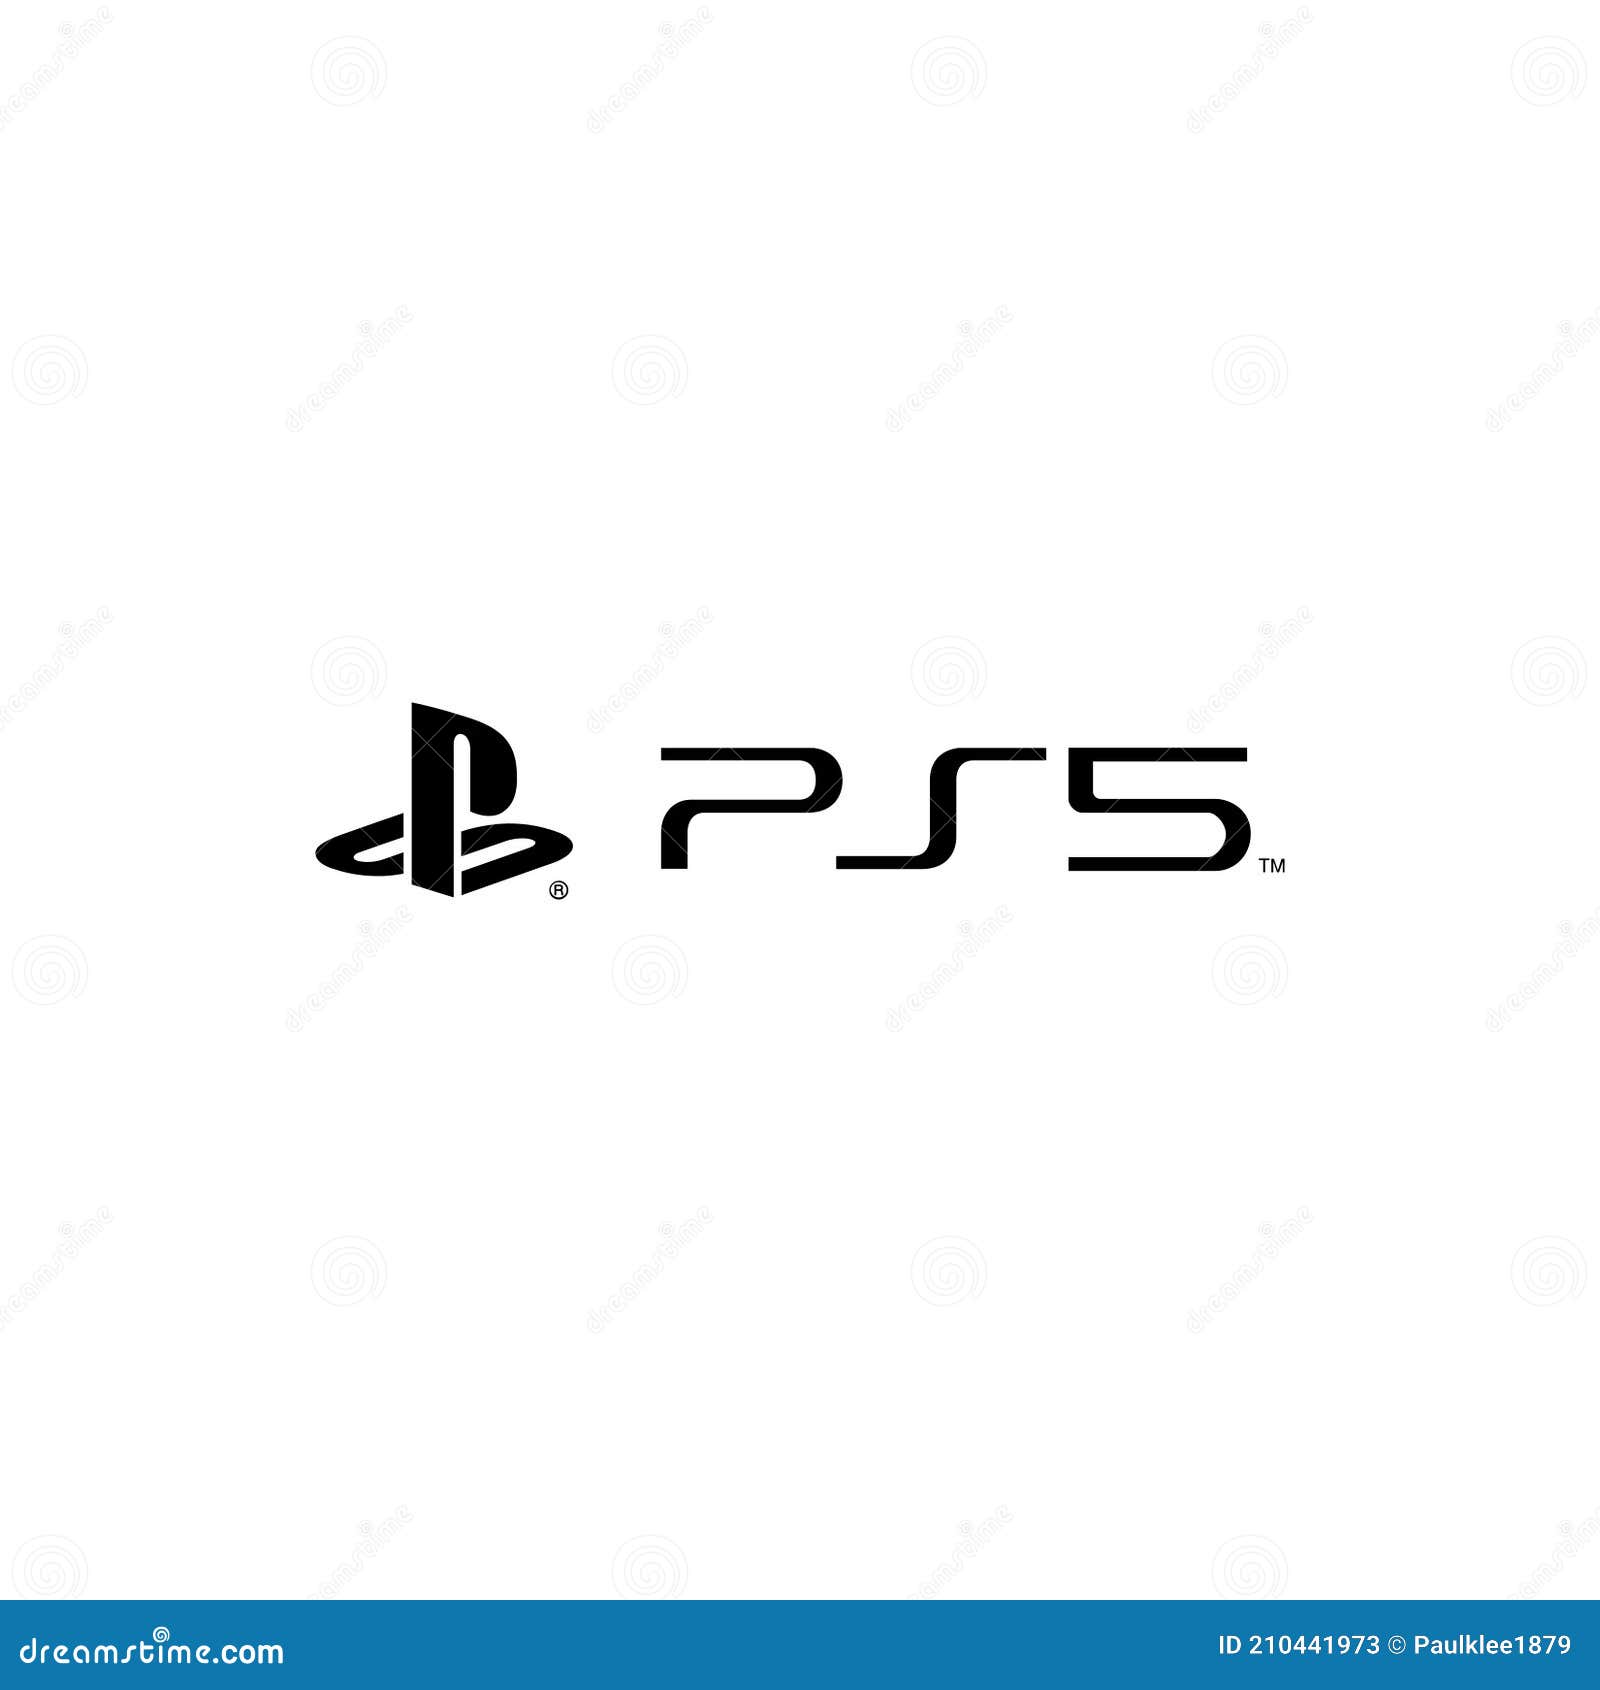 Ps5 Playstation 5 Logo Editoriale Su Fondo Bianco Fotografia Stock  Editoriale - Illustrazione di marchio, icona: 210441973